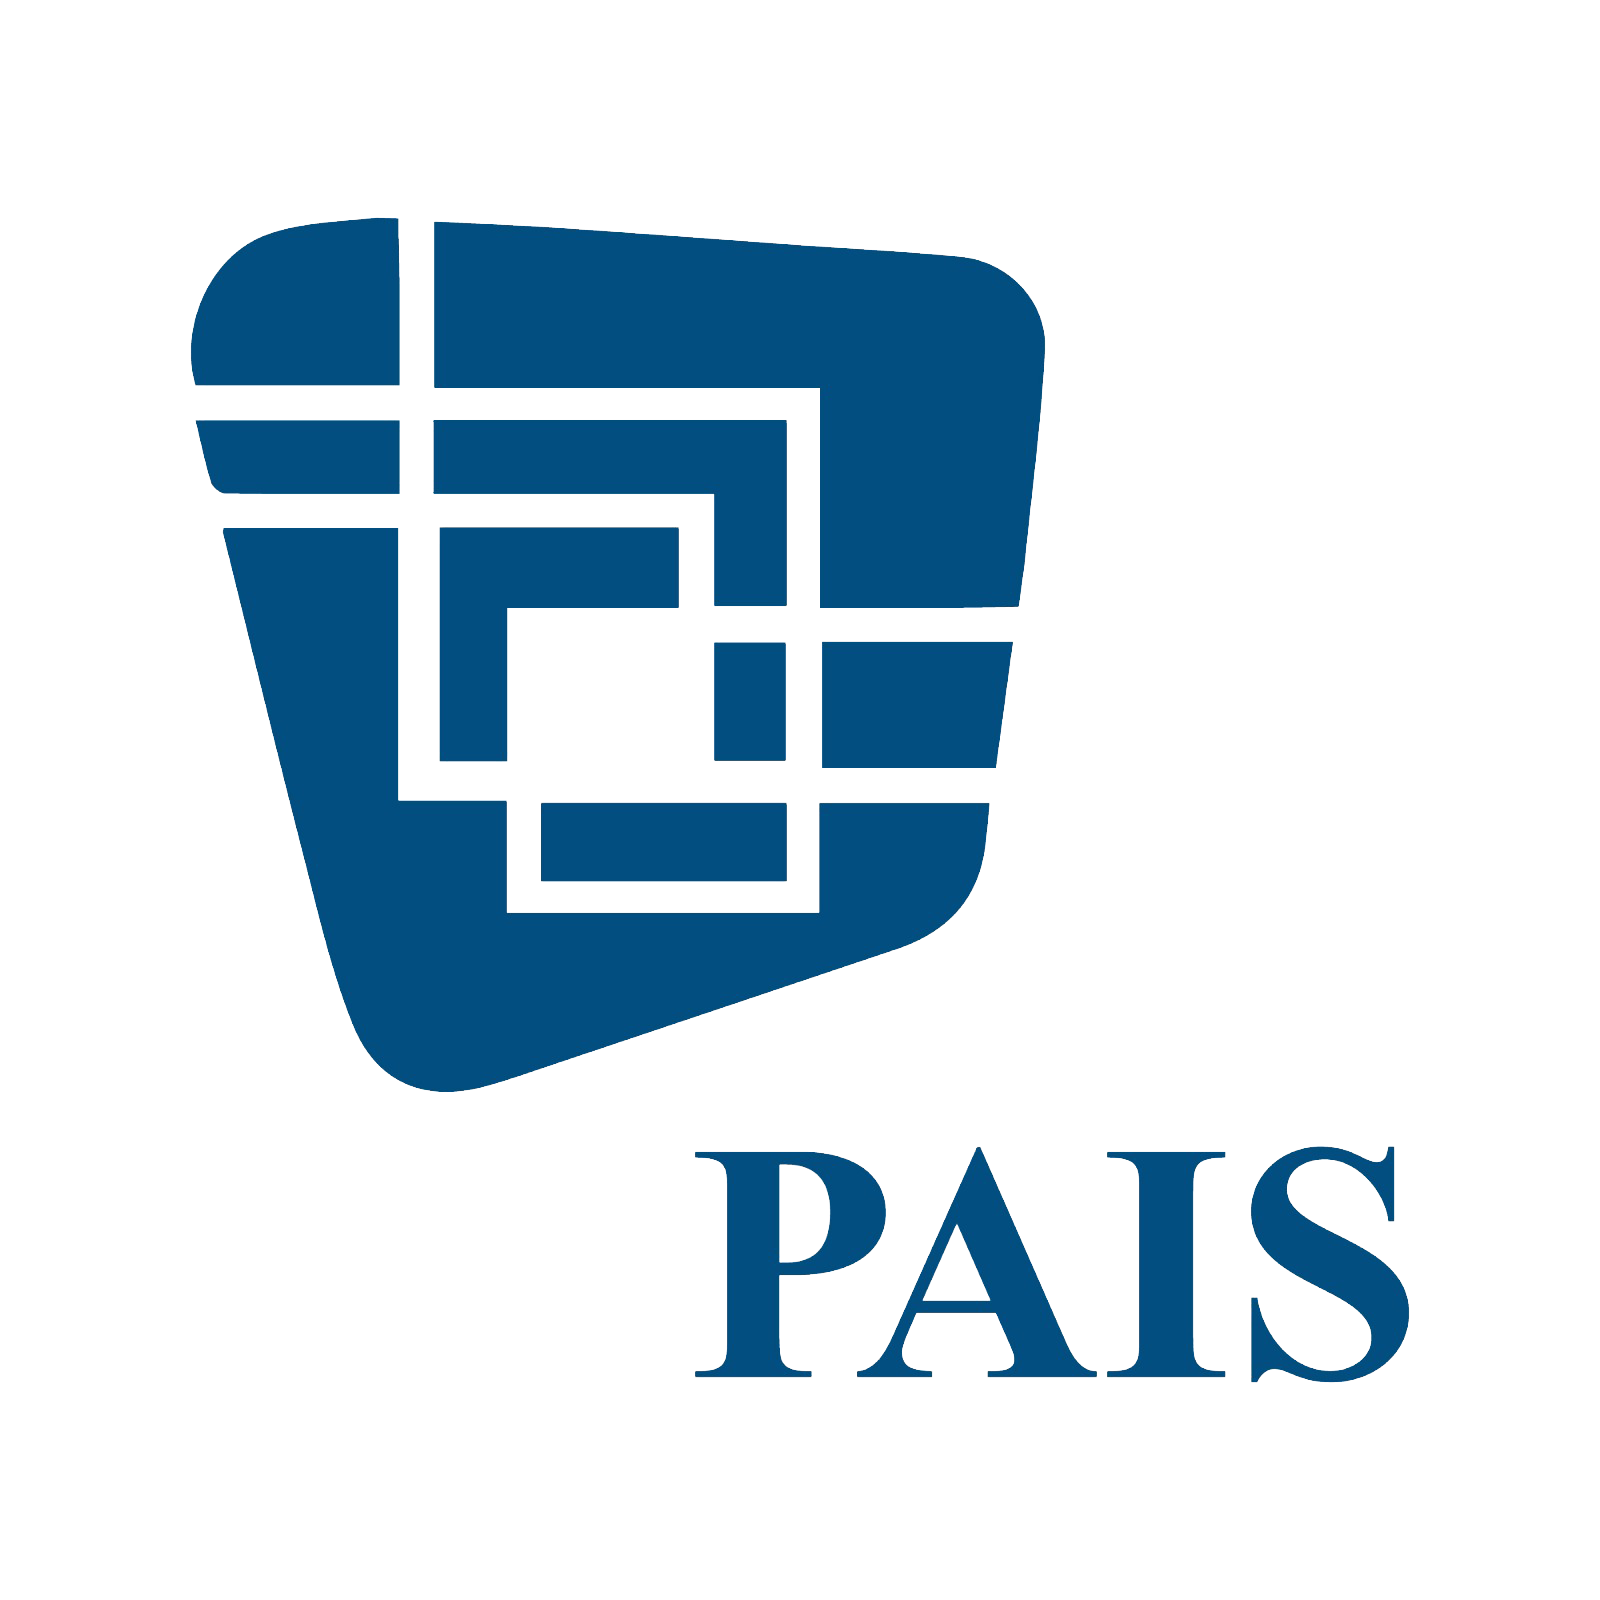 PAIS Group